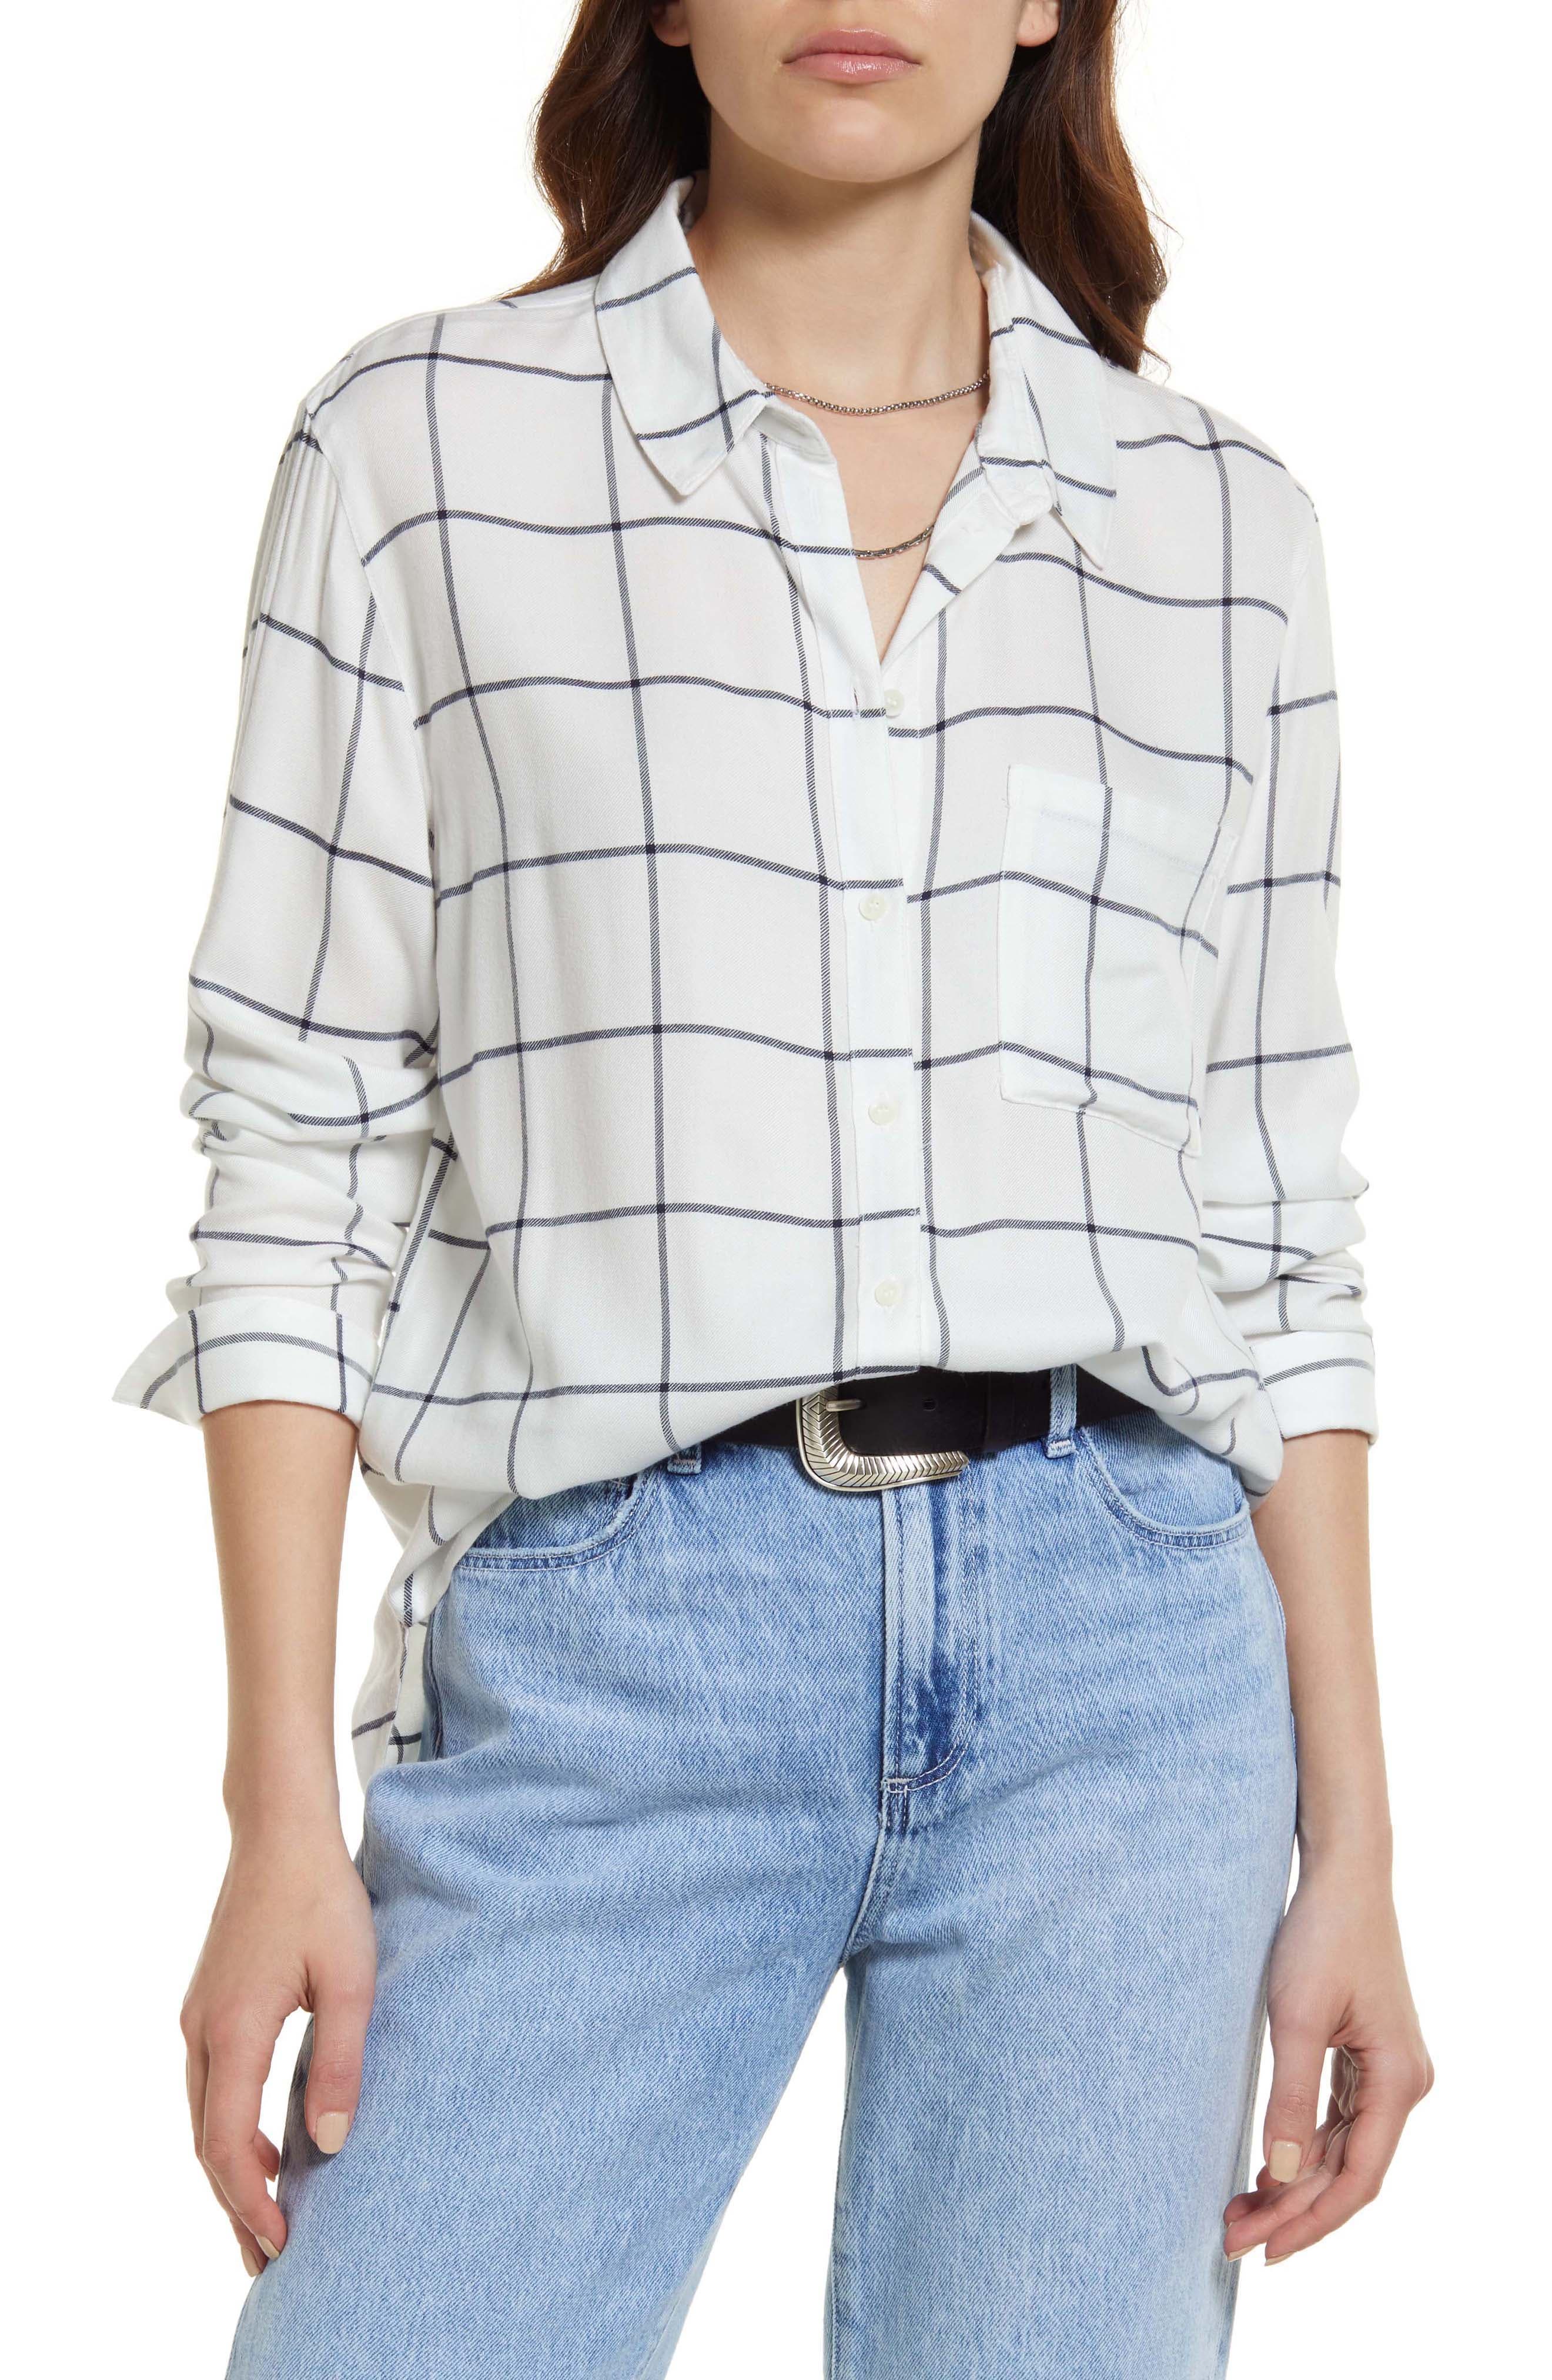 Mango blouse discount 59% Beige XS WOMEN FASHION Shirts & T-shirts Combined 